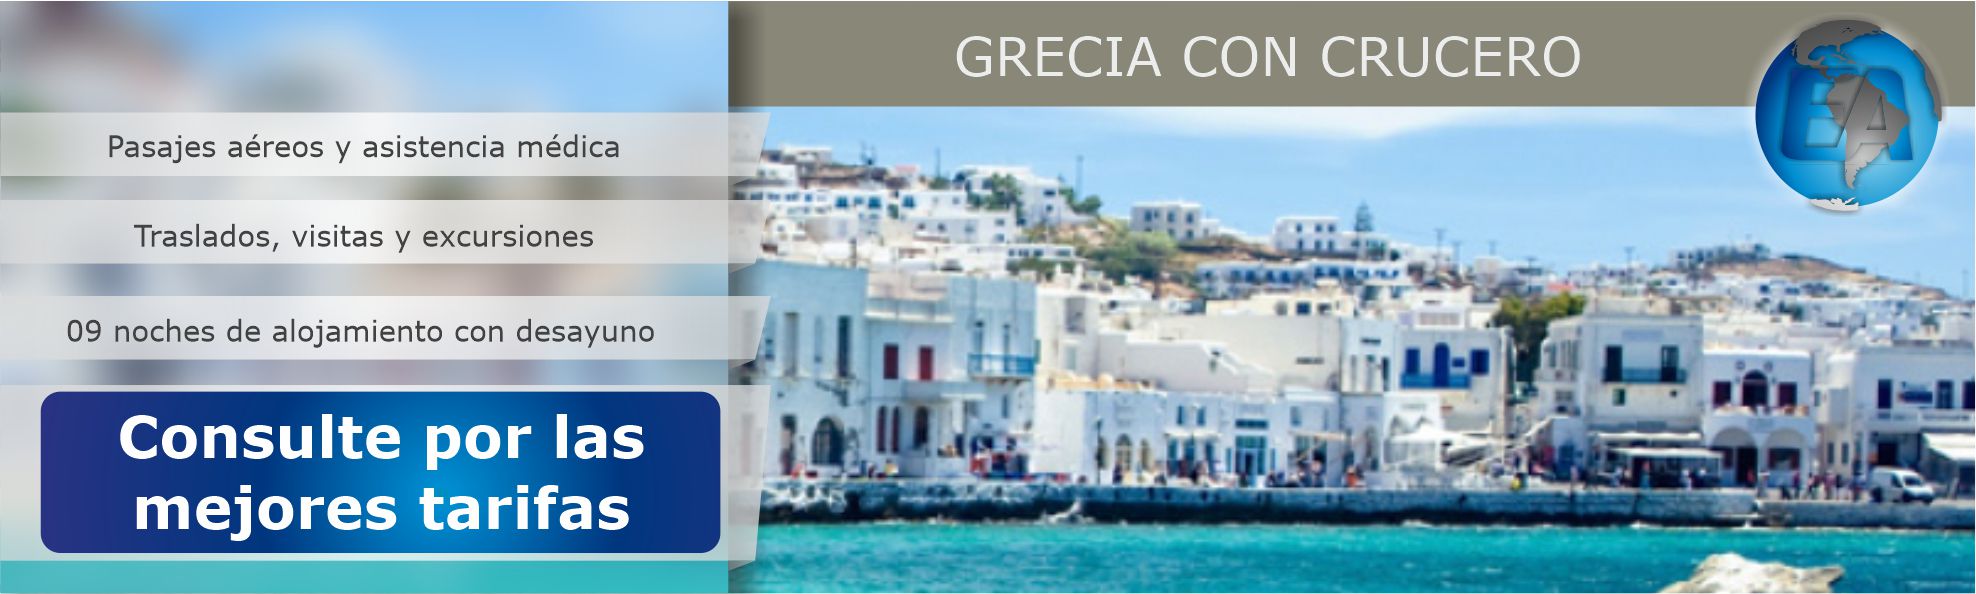 Grecia con crucero